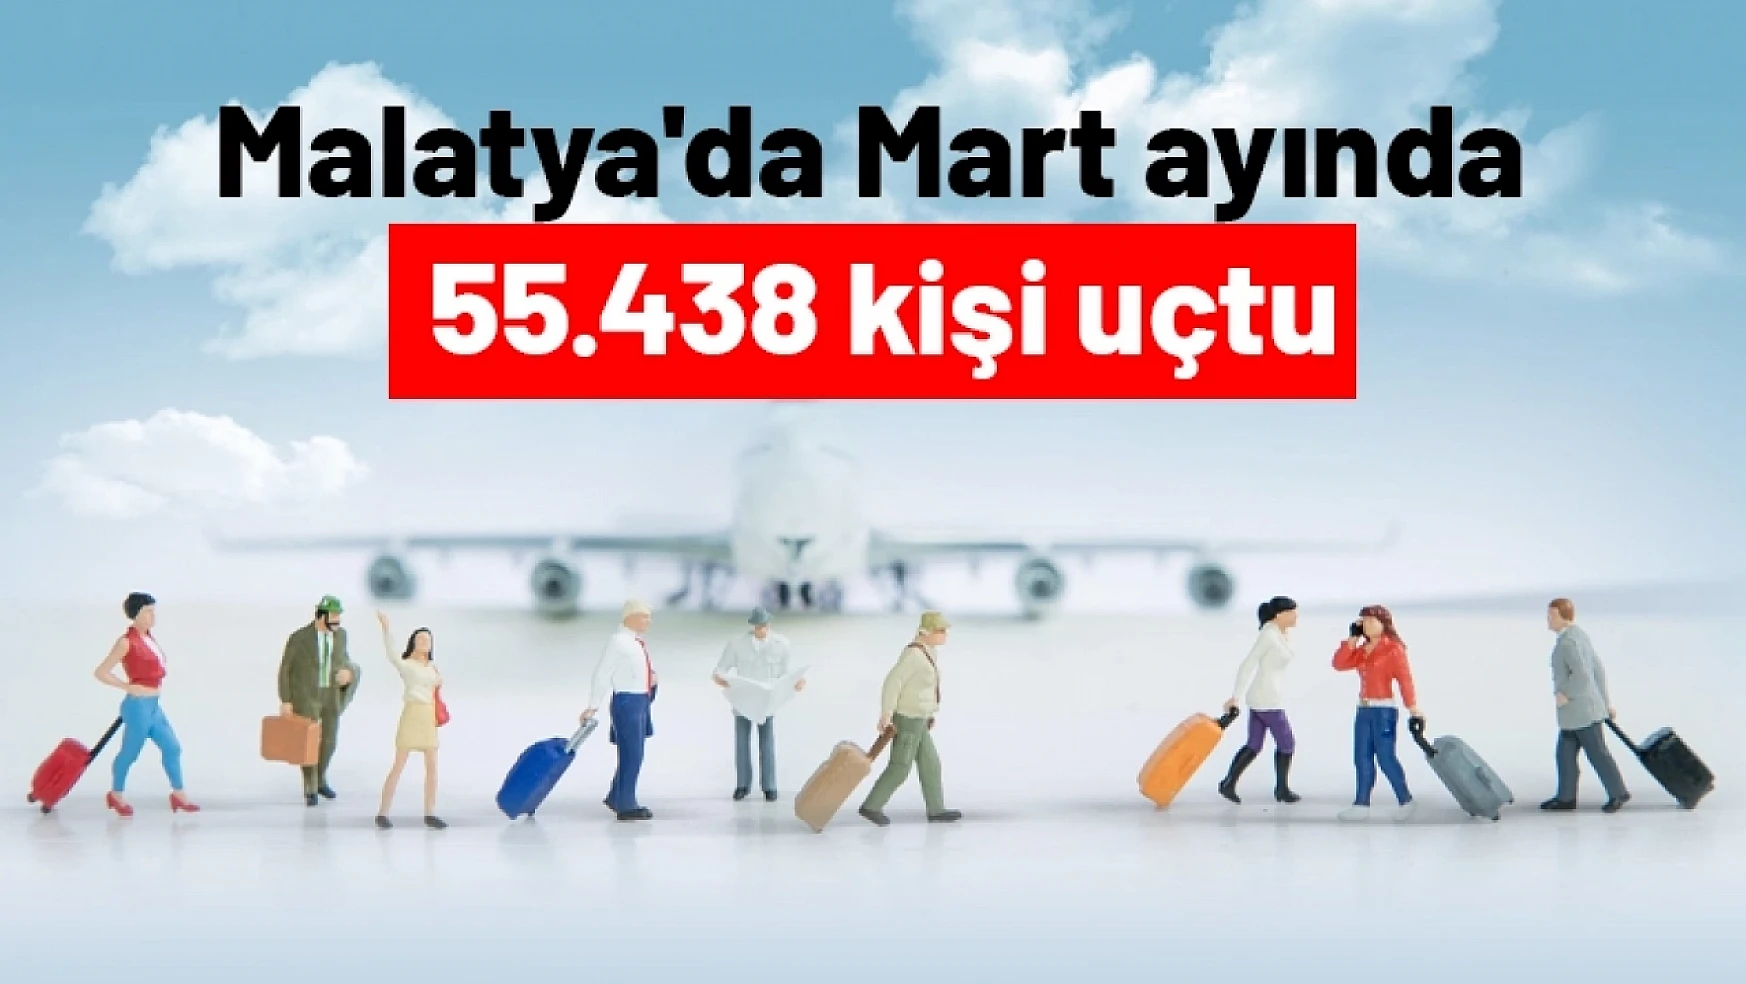 Malatya'da Mart ayında 55.438 kişi uçtu...